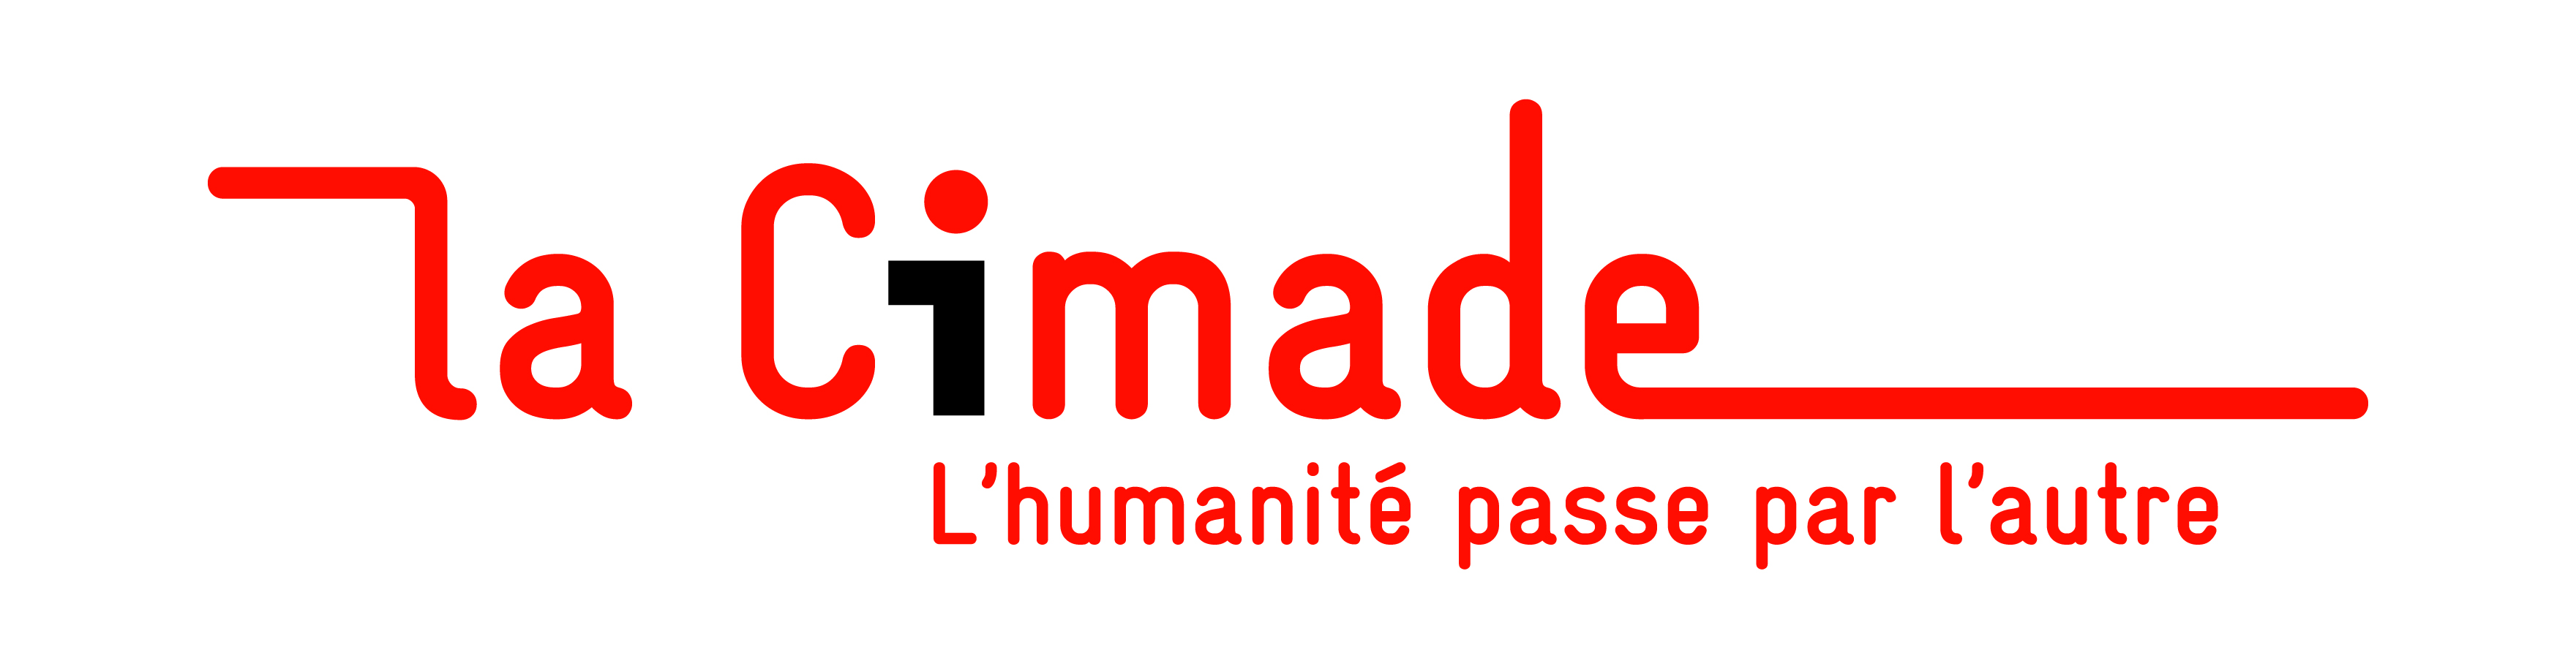 Logo de La Cimade